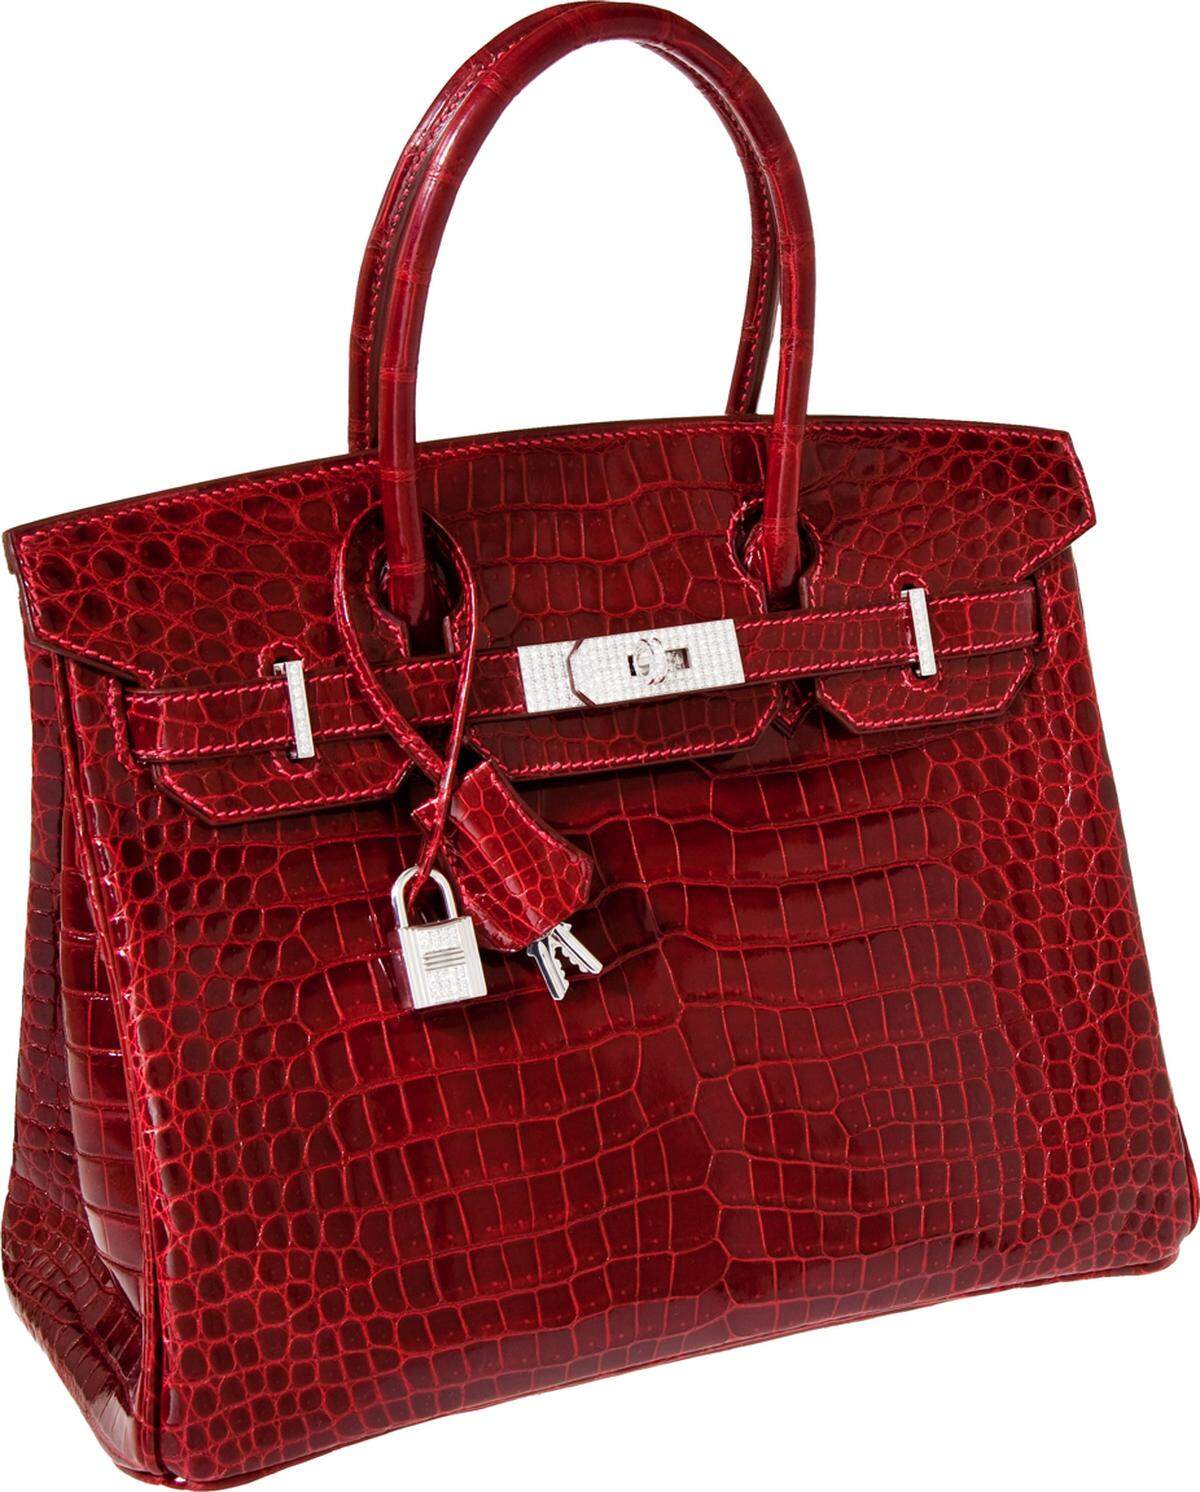 Rotes Krokodilleder und Diamantverzierungen. Teurer und exklusiver kann eine Tasche kaum sein. Die Hermès Birkin Bag hat als Sonderanfertigung 140.000 Dollar gekostet. Bei der "Heritage"-Auktion kommt sie mit einem Einstiegsgebot von 70.000 Dollar an den Start.